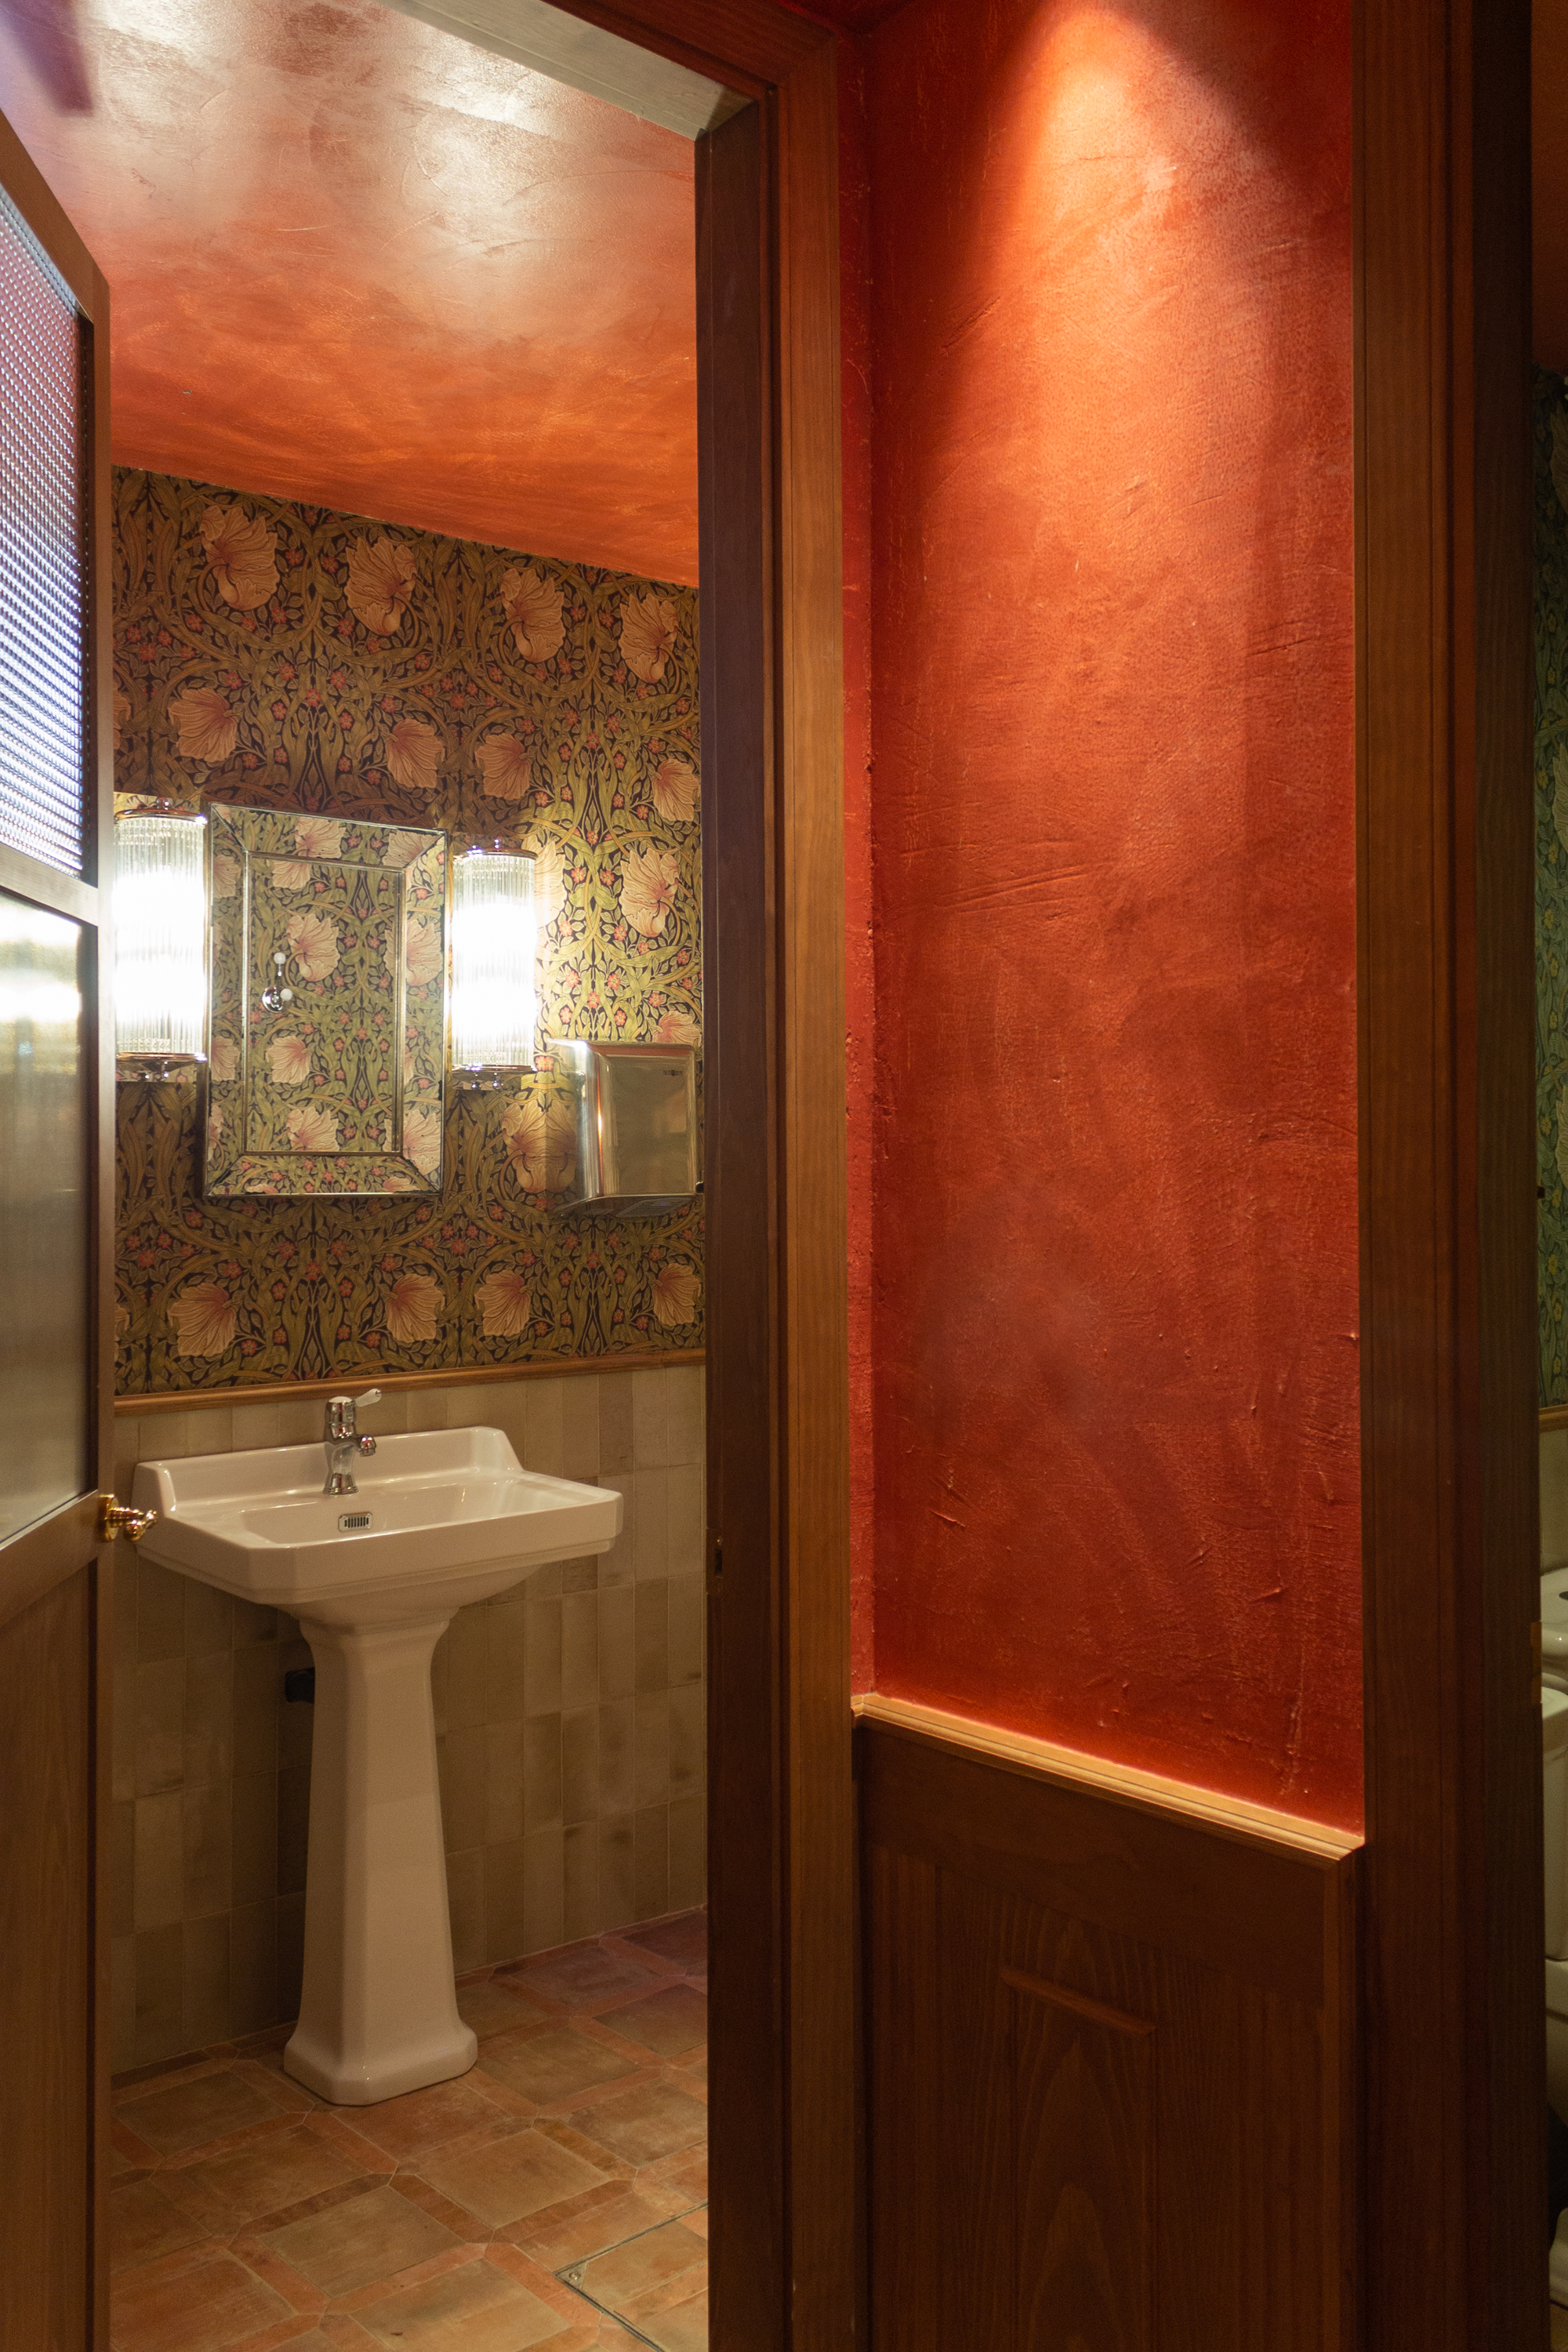 Vista al baño de señoras, diseñado con zócalo de alicatado a media altura y papel pintado llamativo, con un toque antiguo, clásico y elegante